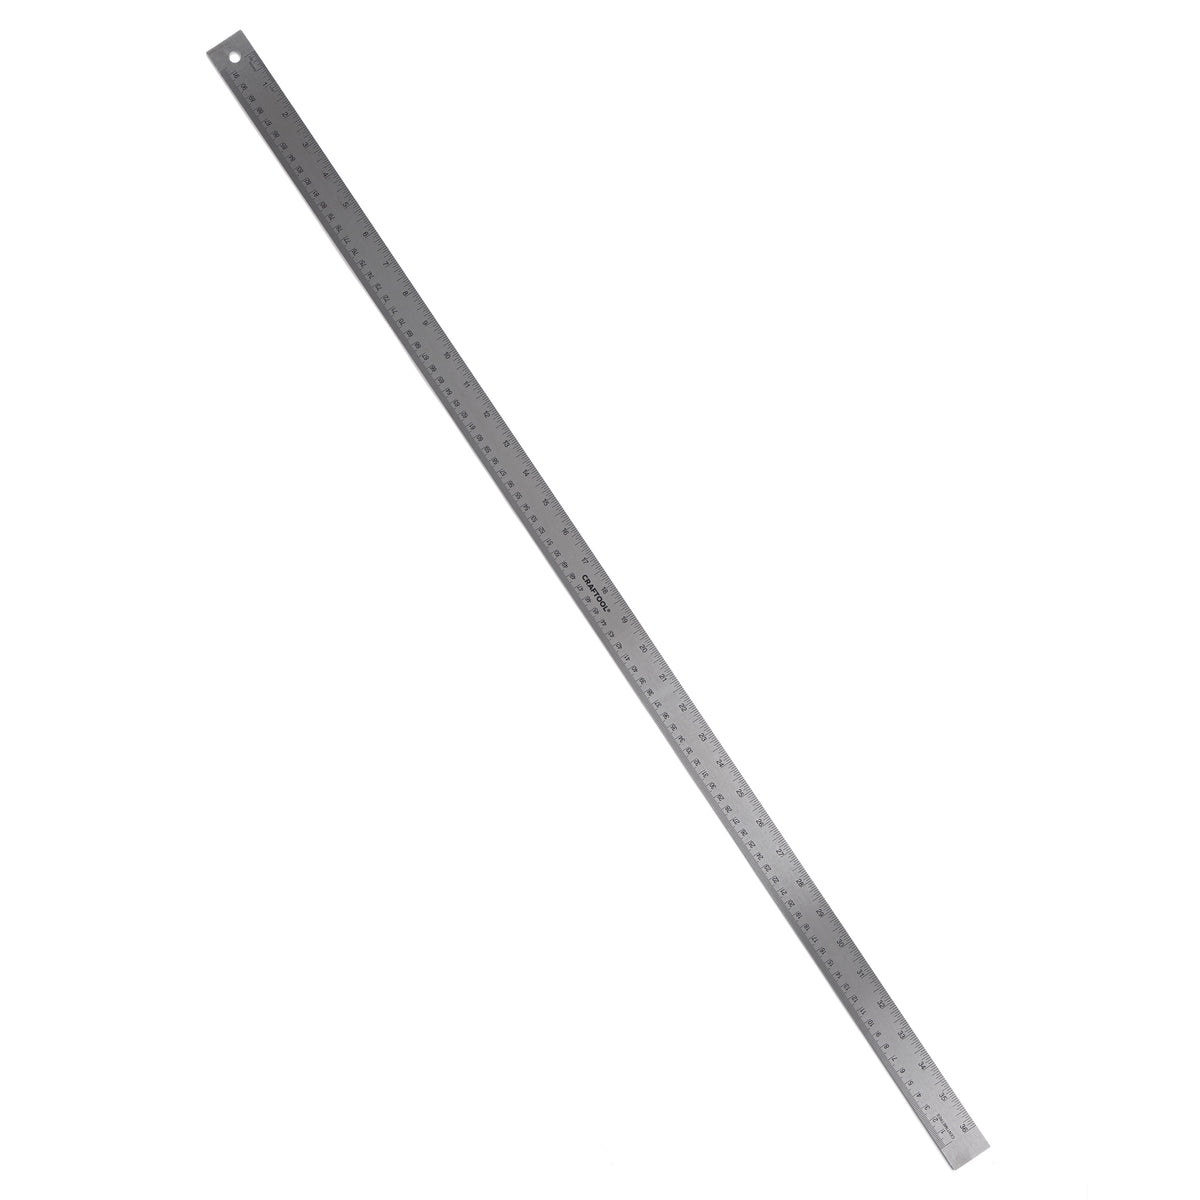  SAVITA 3pcs Irregular Edge Ruler, Metal Craft Ruler